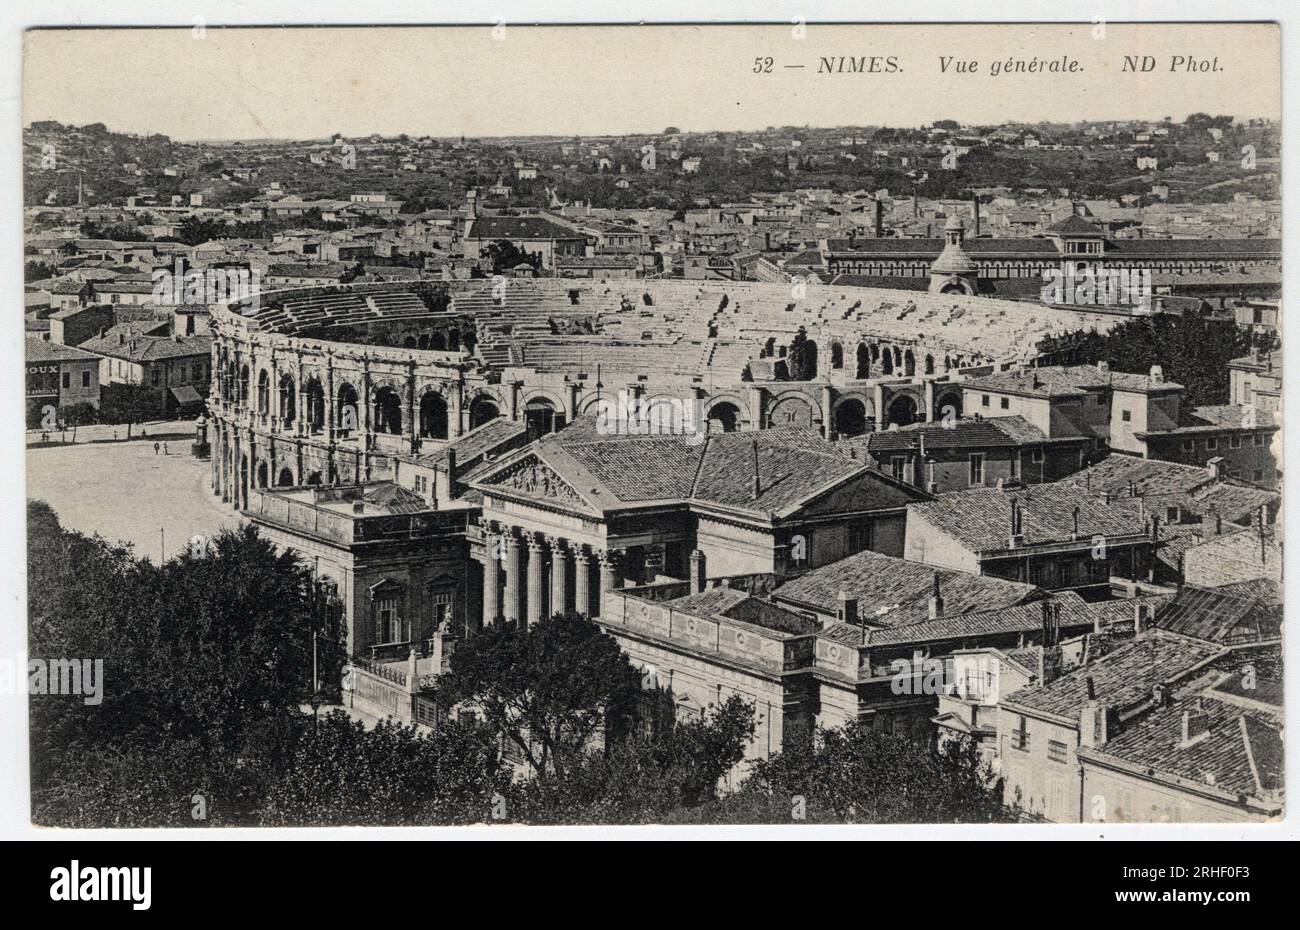 Languedoc Roussillon, Gard (30), Nimes : vue generale de la ville avec les arenes et la Maison Carree - Carte postale fin 19eme-20eme siecle Stock Photo